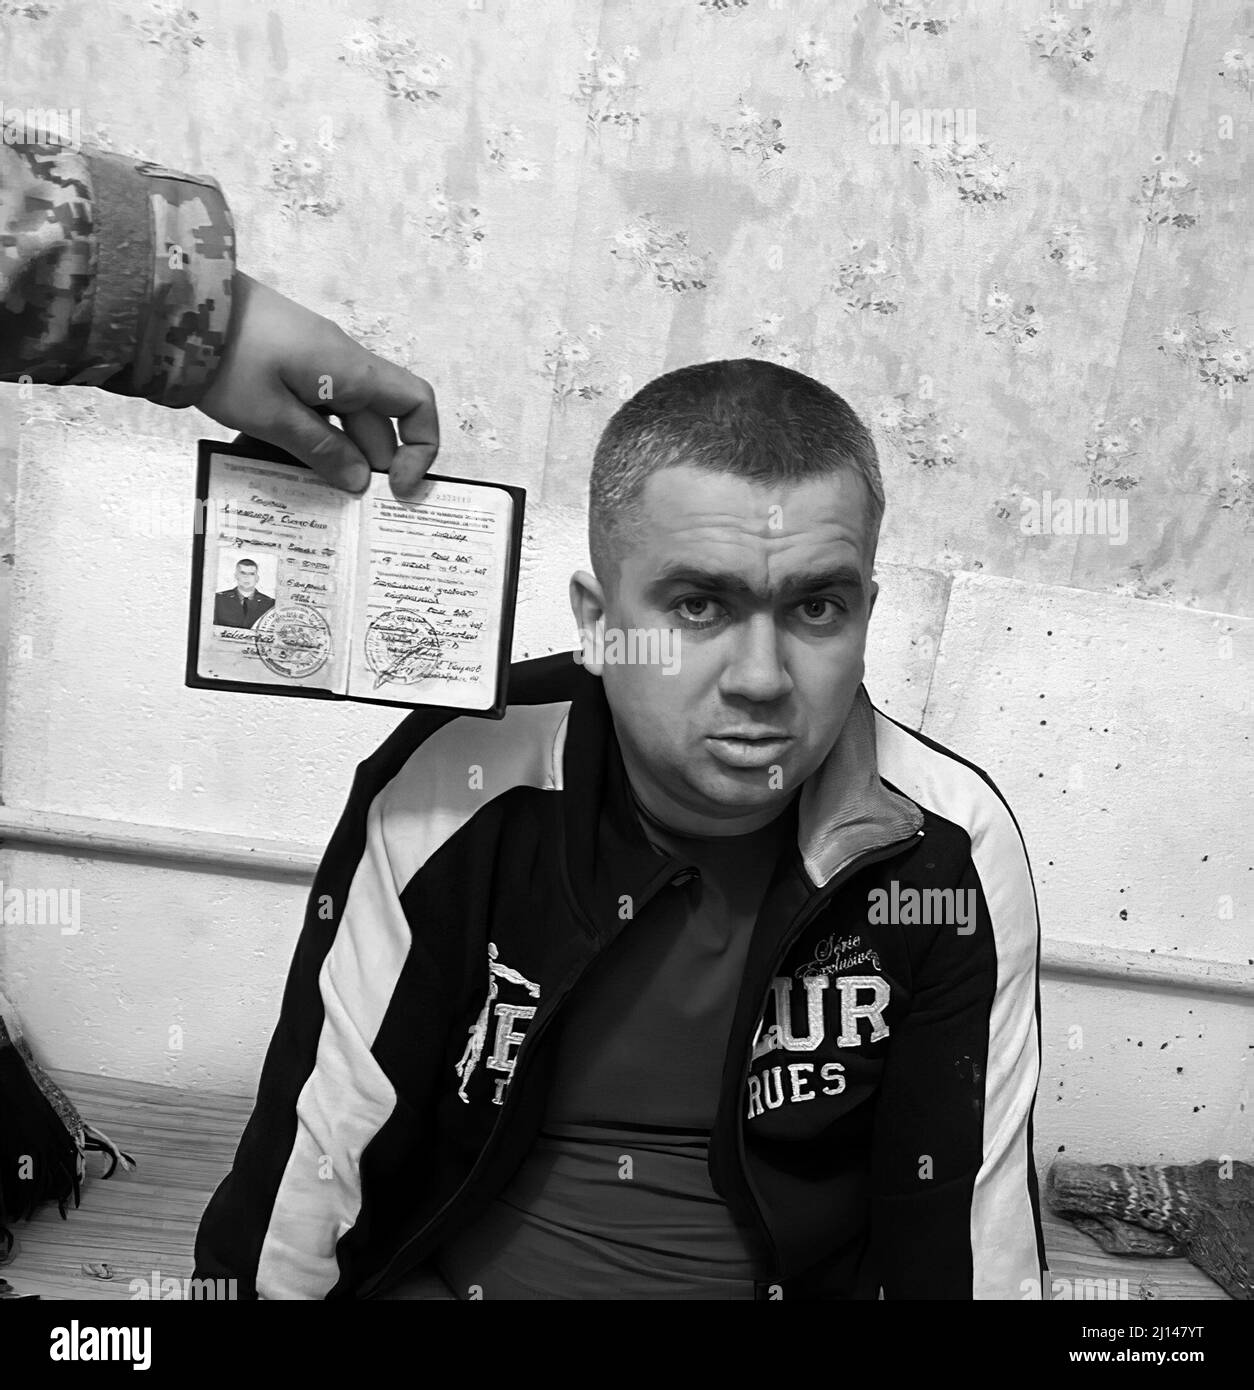 Le forze Armate ucraine riferiscono che questo colonnello tenente russo è stato preso prigioniero: Indossava mutande e calzini delle forze Armate dell'Ucraina. (Foto: Forze armate ucraine) Foto Stock